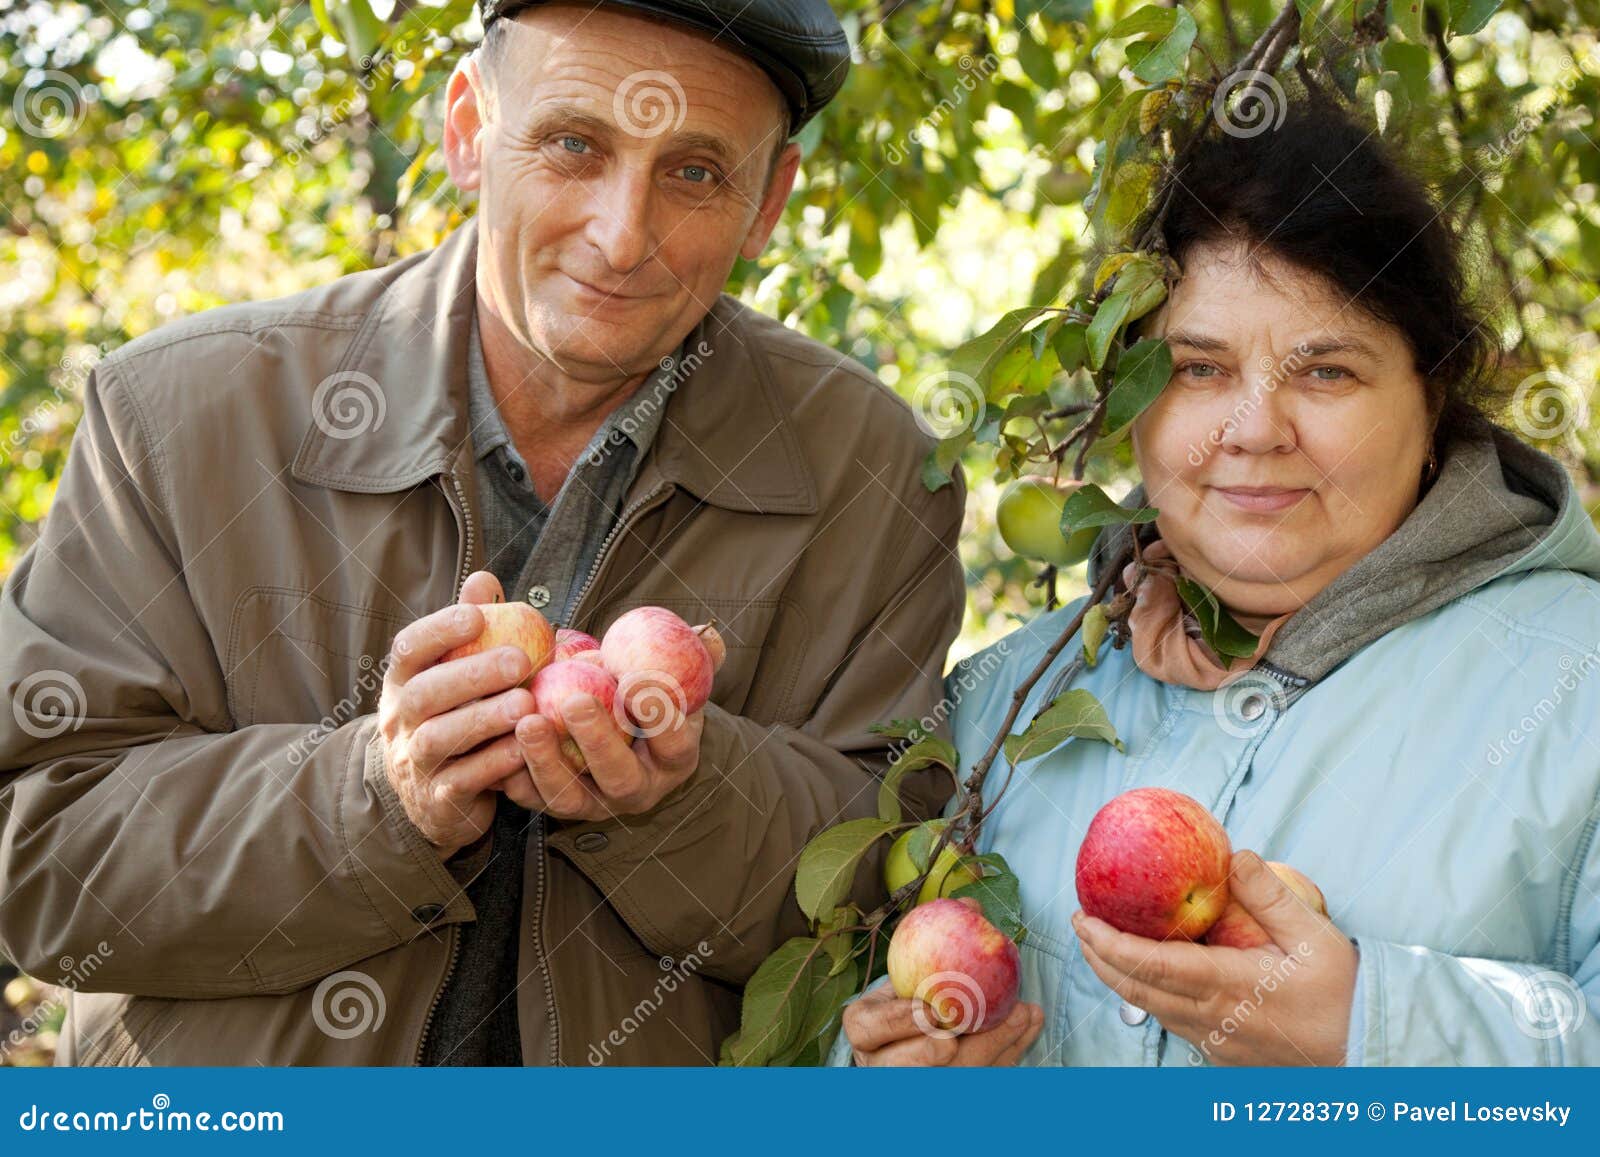 Пара яблонь. Пара яблок. Пожилые люди с яблоками. Мужчина и женщина с яблоком. Пожилая женщина с яблоками и мужчина.